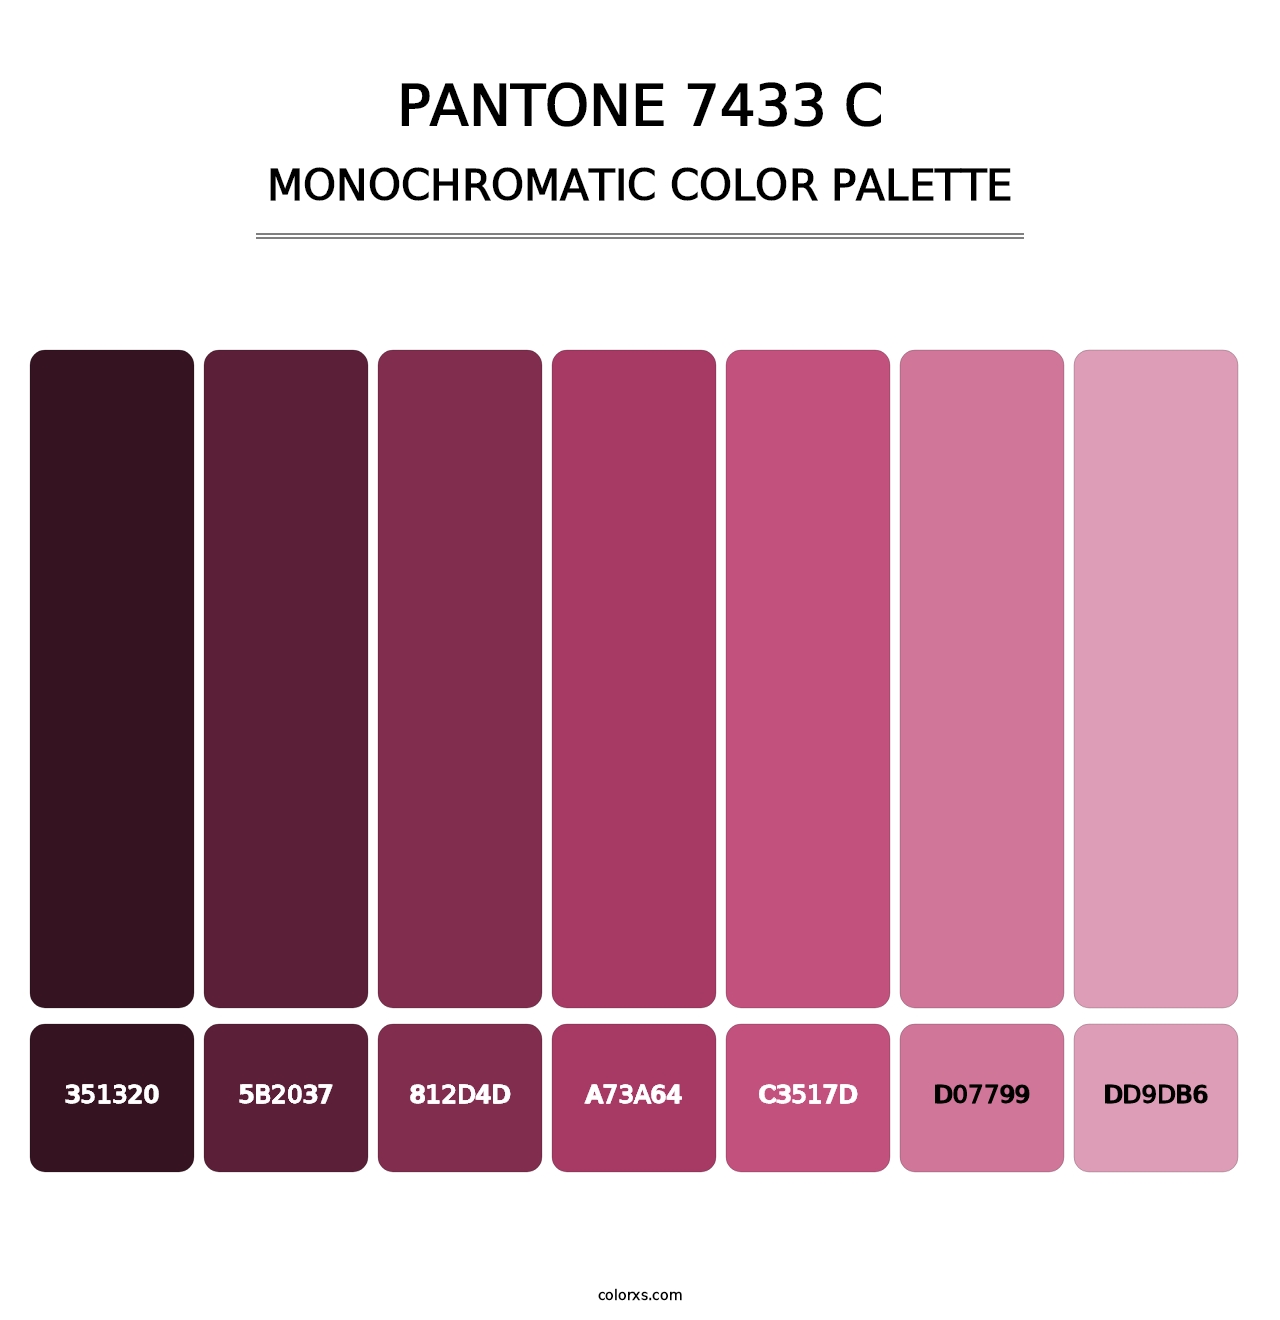 PANTONE 7433 C - Monochromatic Color Palette